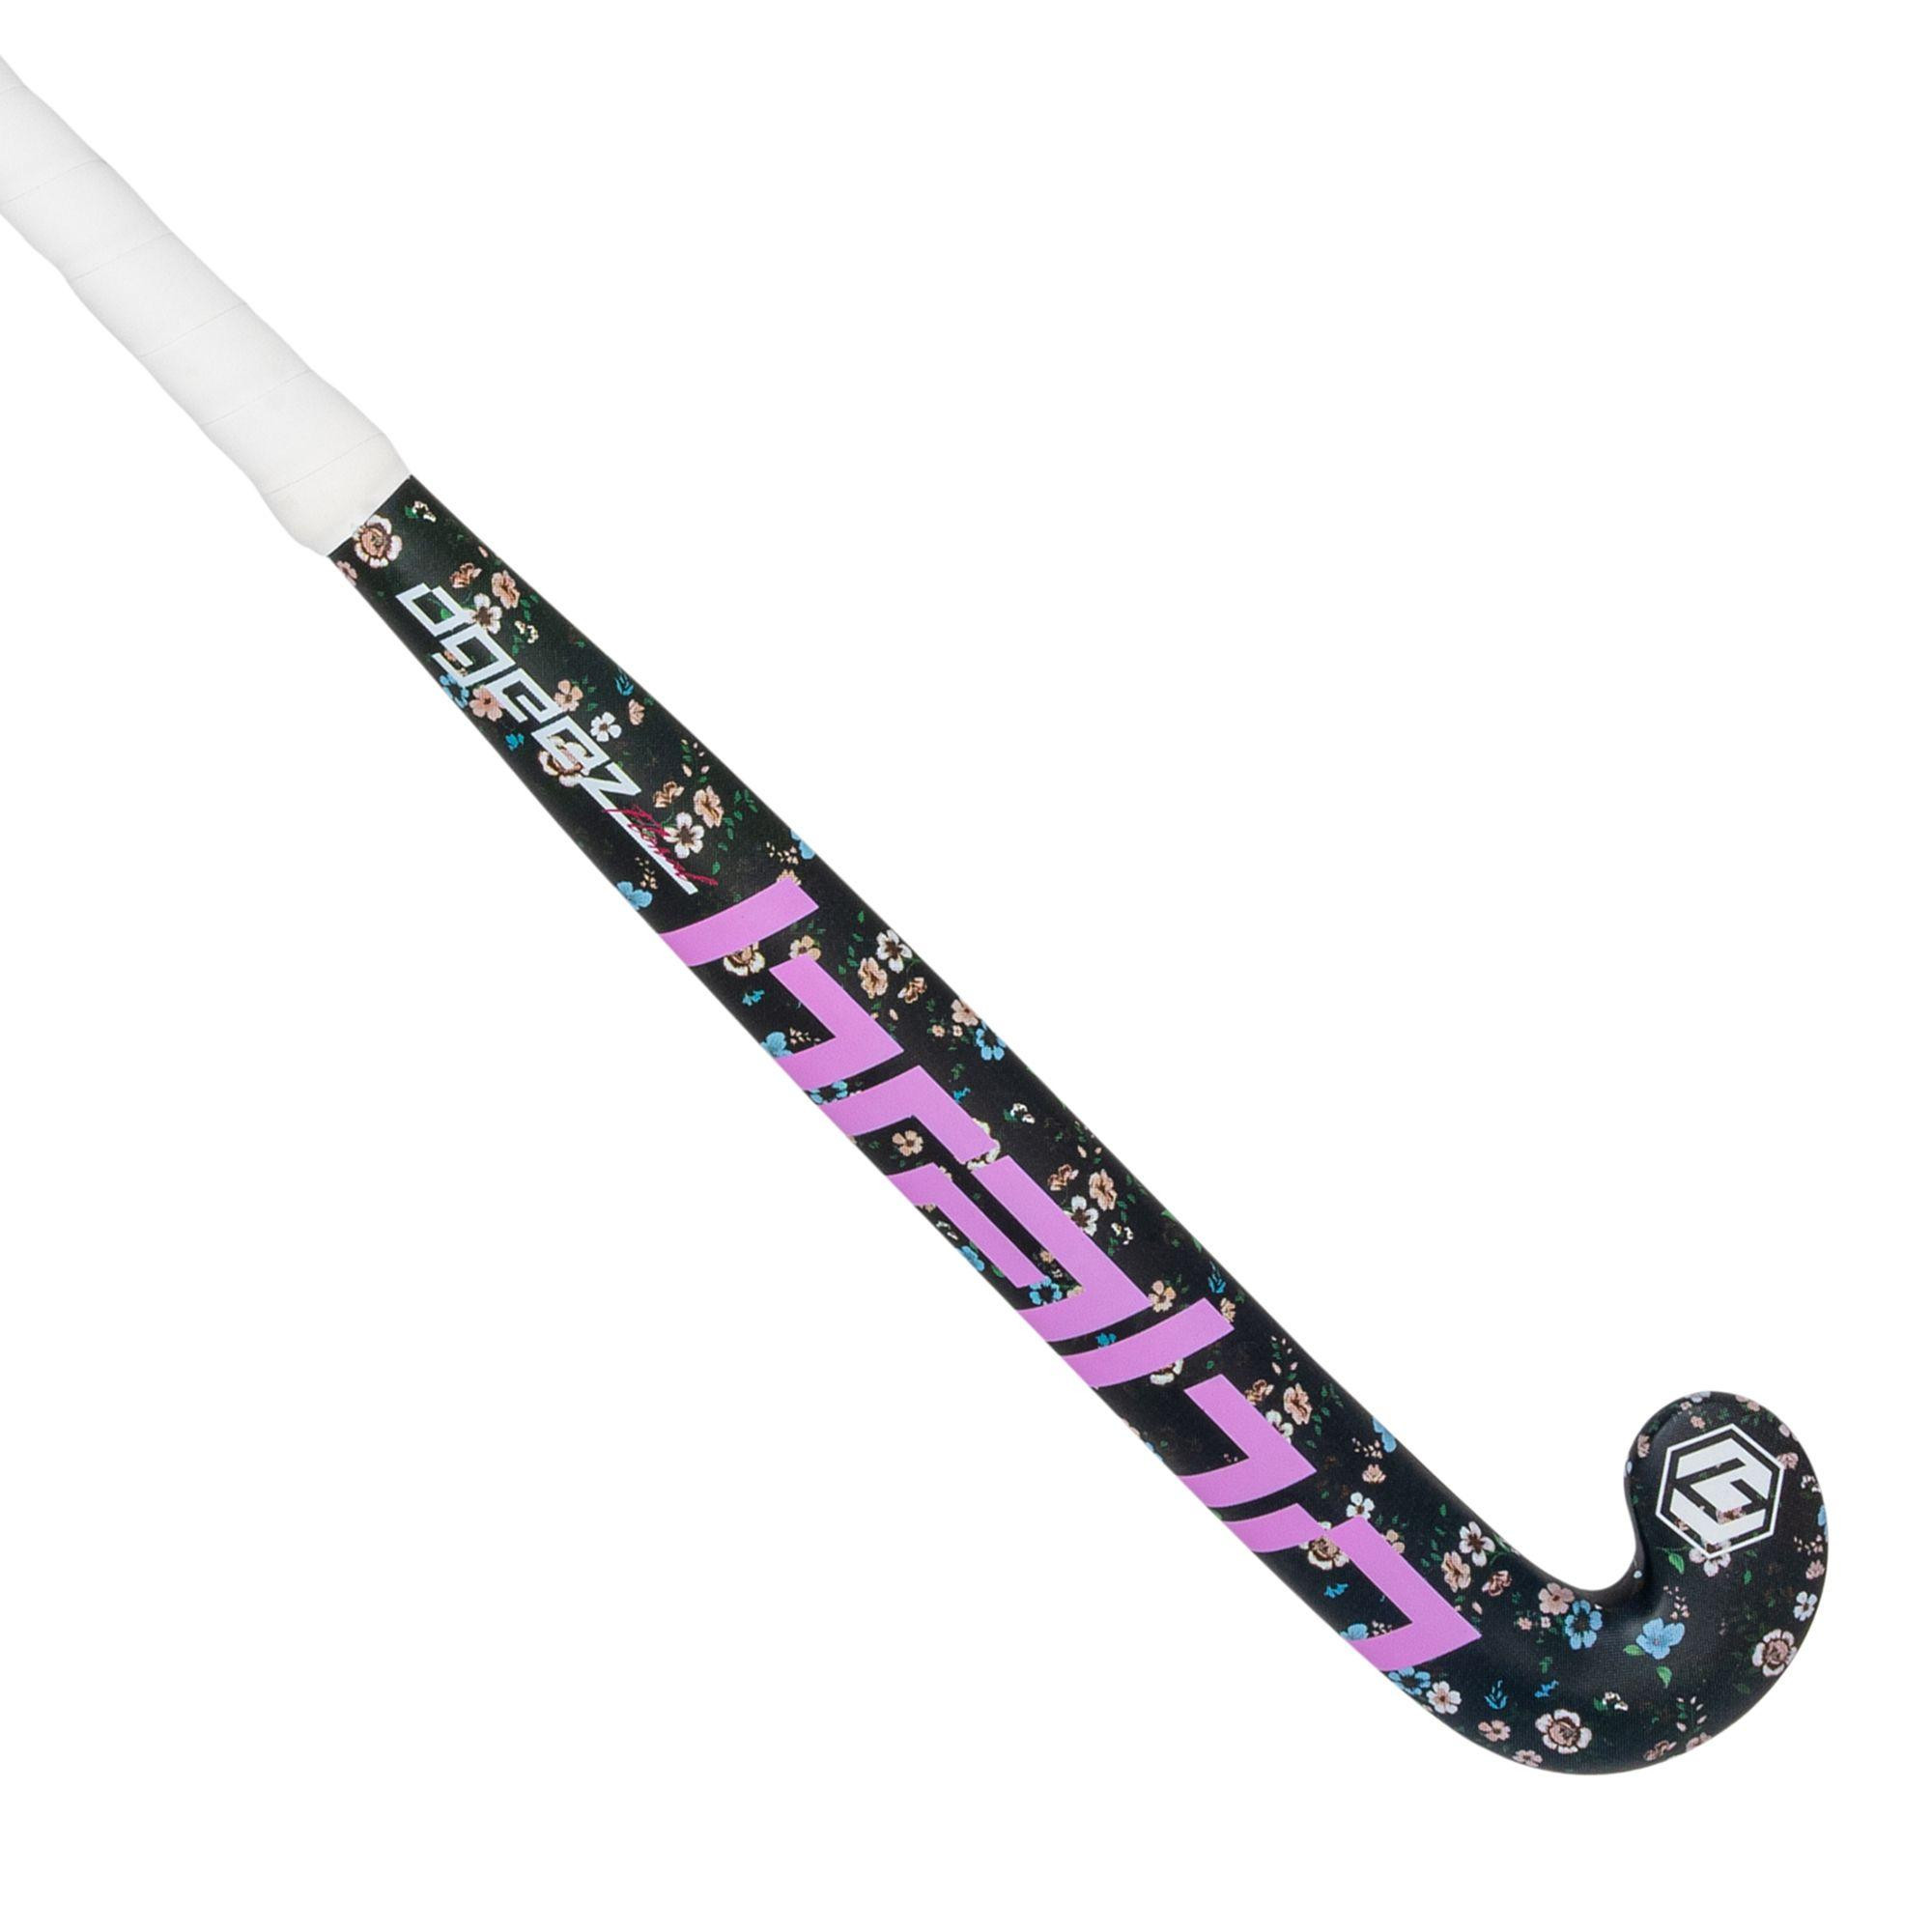 Hockeystick O'Geez Floral Midbow